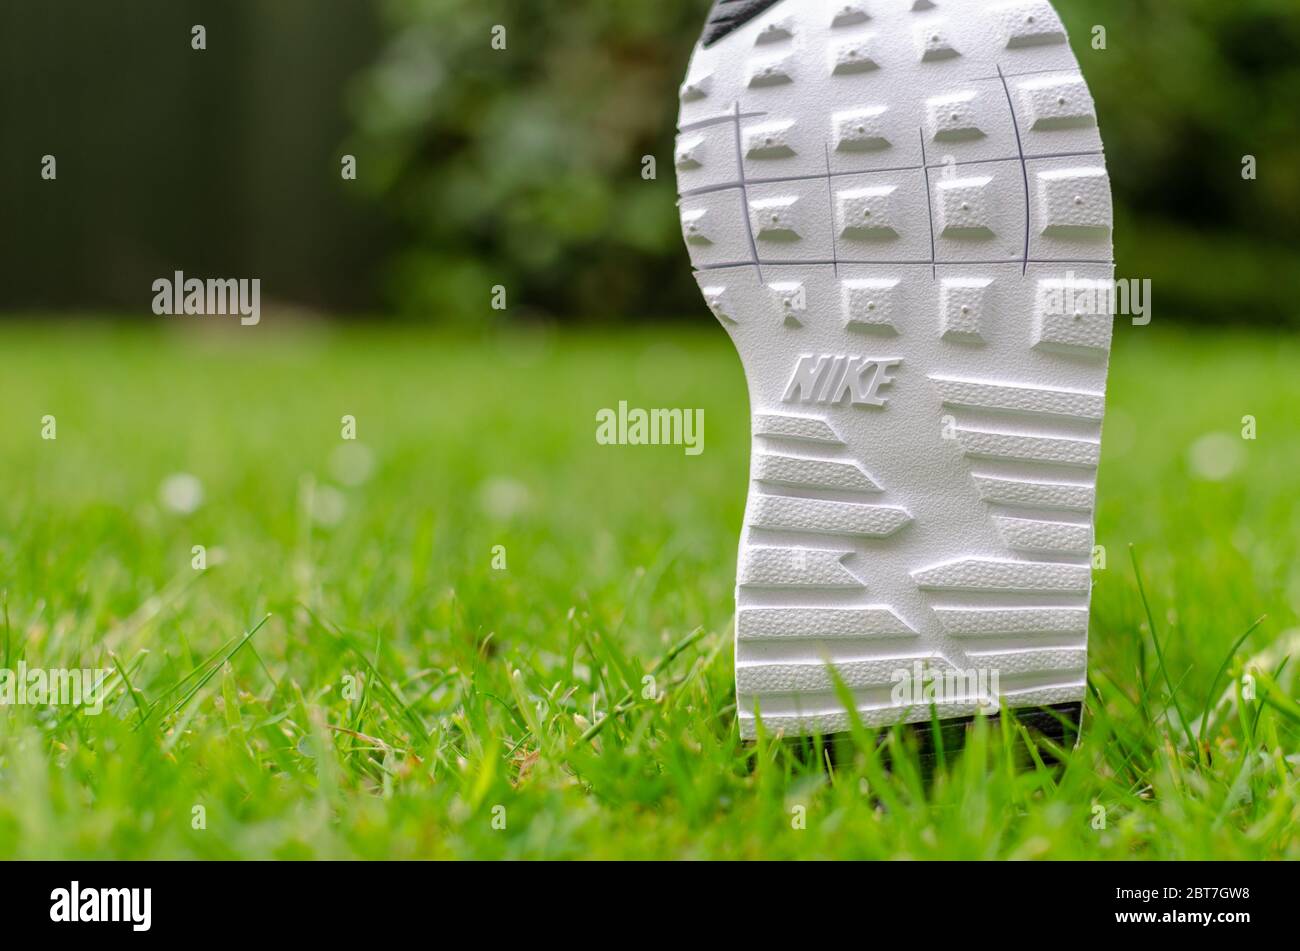 Das Nahaufnahme Foto der Air Nike Trainingssohle für Kinder auf dem lebhaften Gras. Für die Bildgebung wurde ein flaches Sichtfeld verwendet. Stockfoto